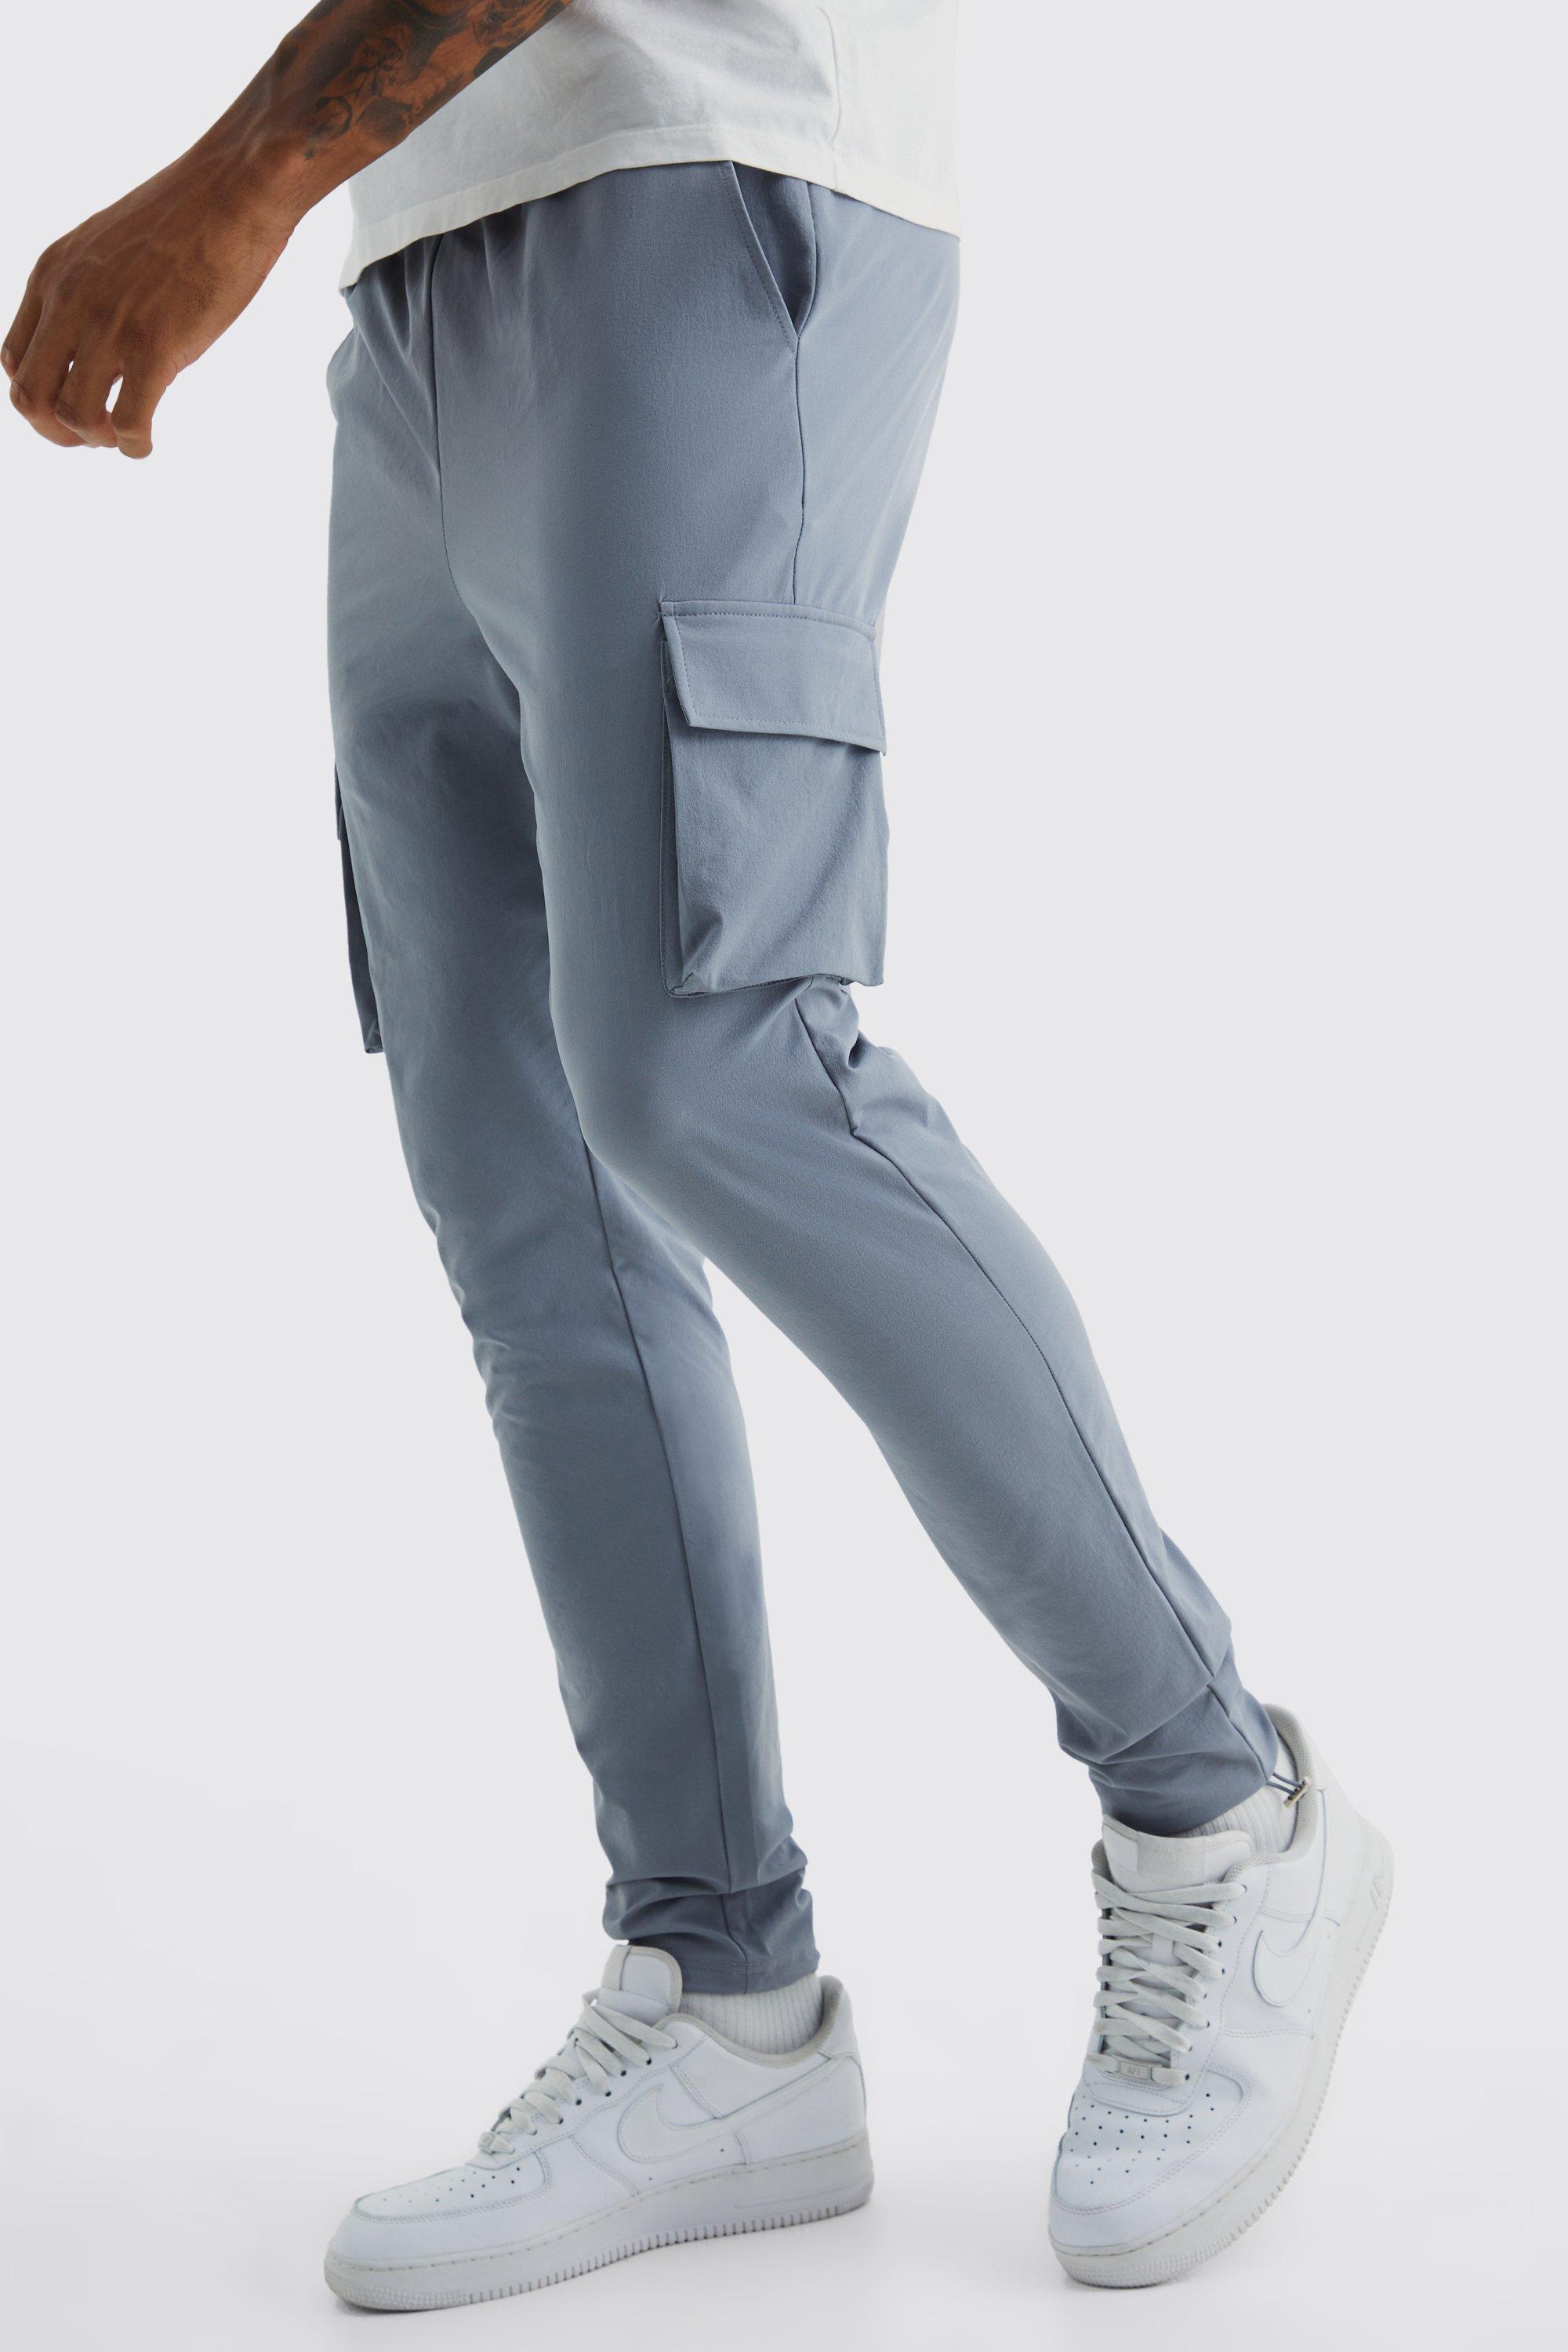 Image of Pantaloni Cargo Tall in Stretch Skinny Fit leggeri elasticizzati, Grigio